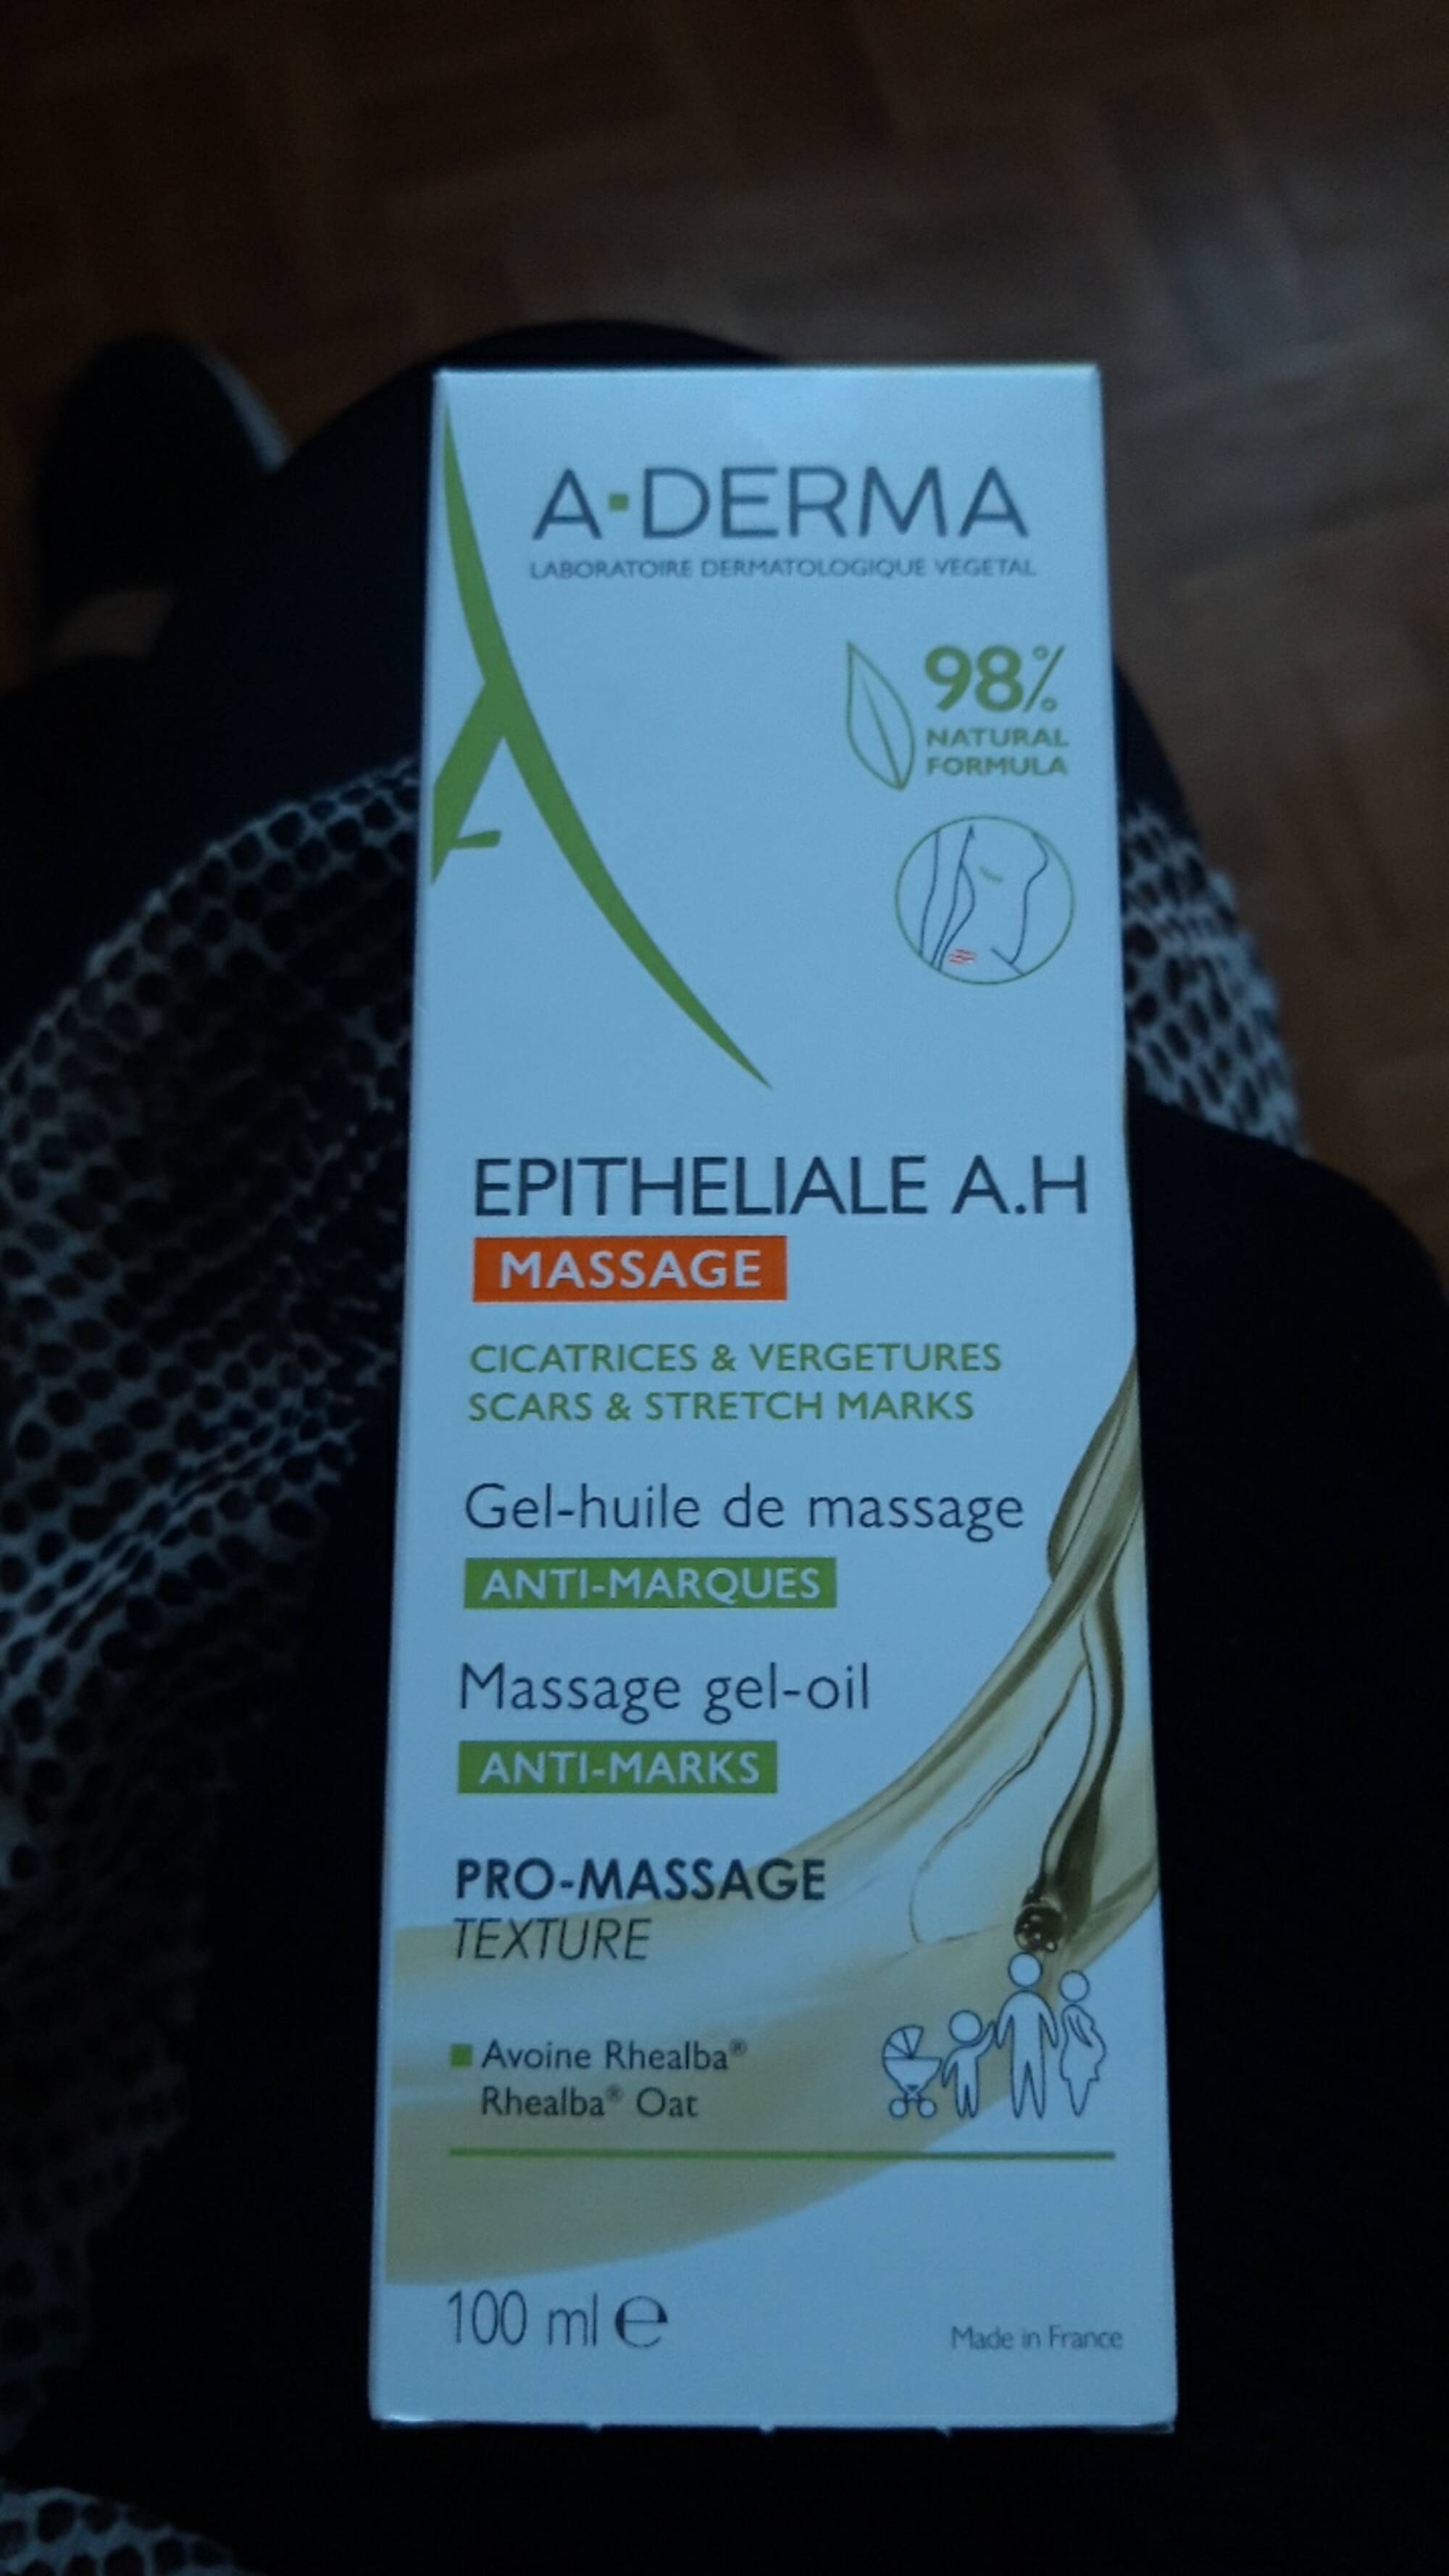 A-DERMA - Epitheliale A.H. - Gel-huile de massage